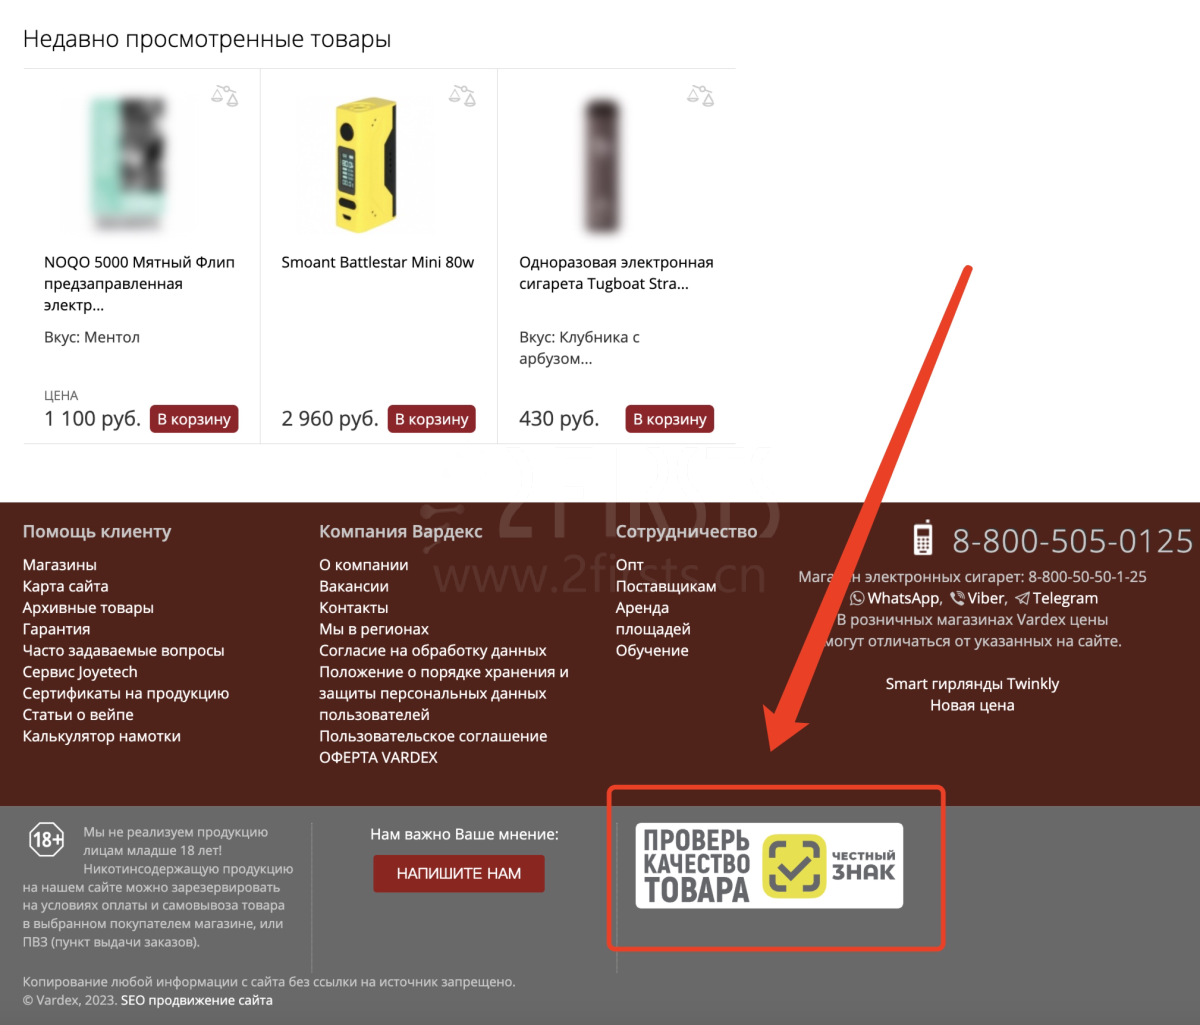 俄罗斯头部电子烟网站Vardex进行合规改版 无“诚实标签”产品将全面下架